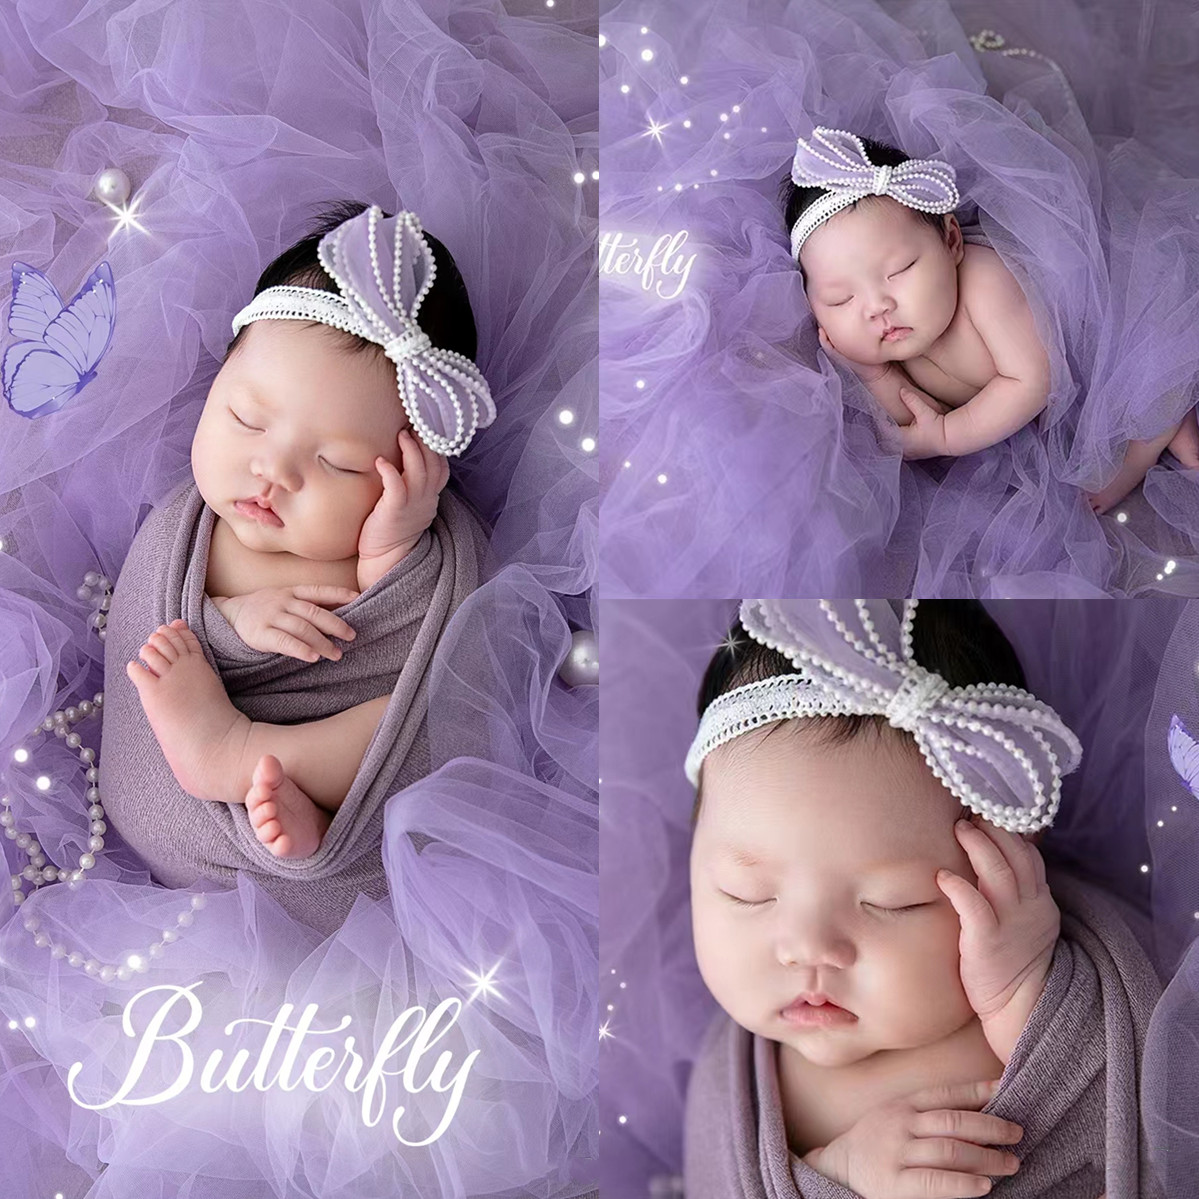 宝宝儿童摄影裹布背景毯紫色纱主题新生儿满月婴儿道具影楼艺术照